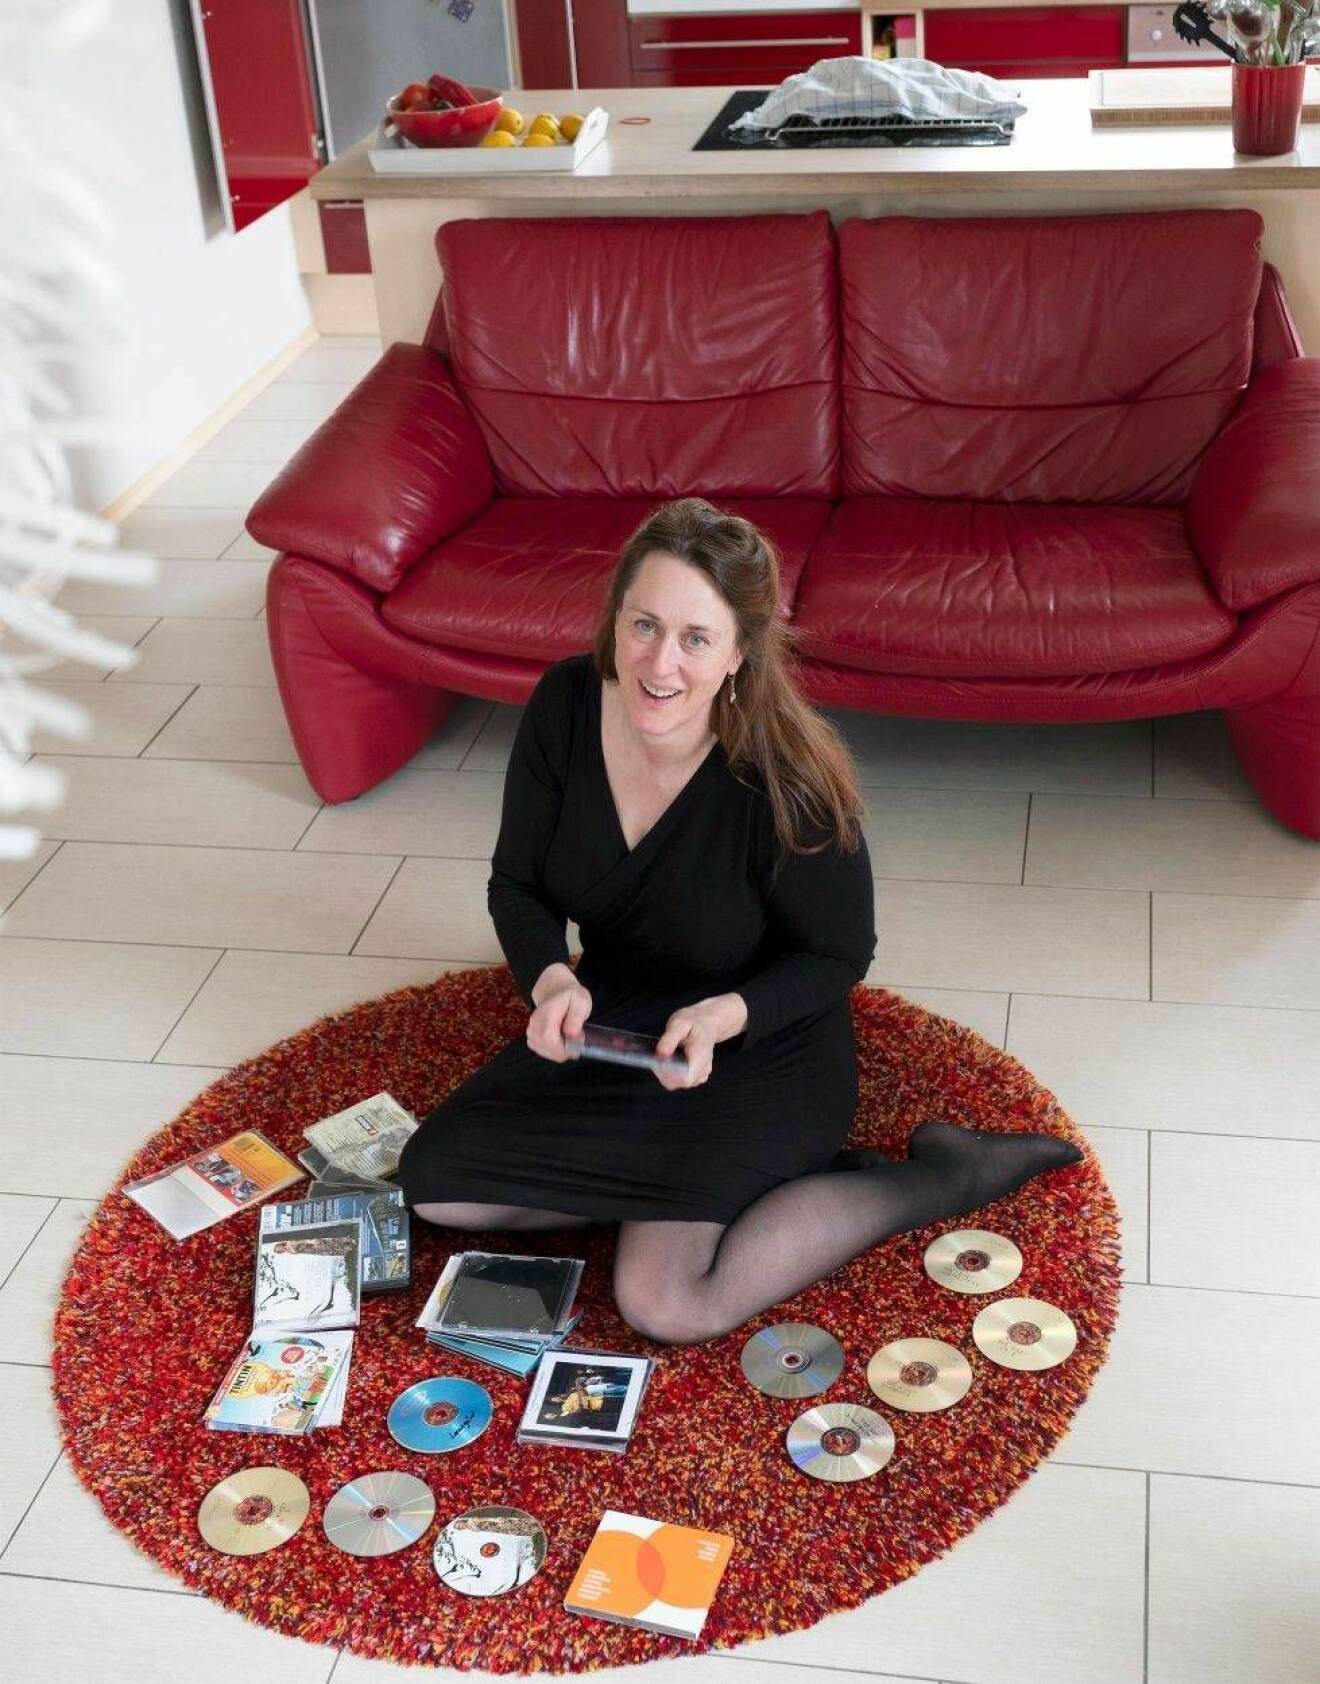 En medelålders kvinna med brunt hår sitter på en matta med cd-skivor utspridda kring sig.